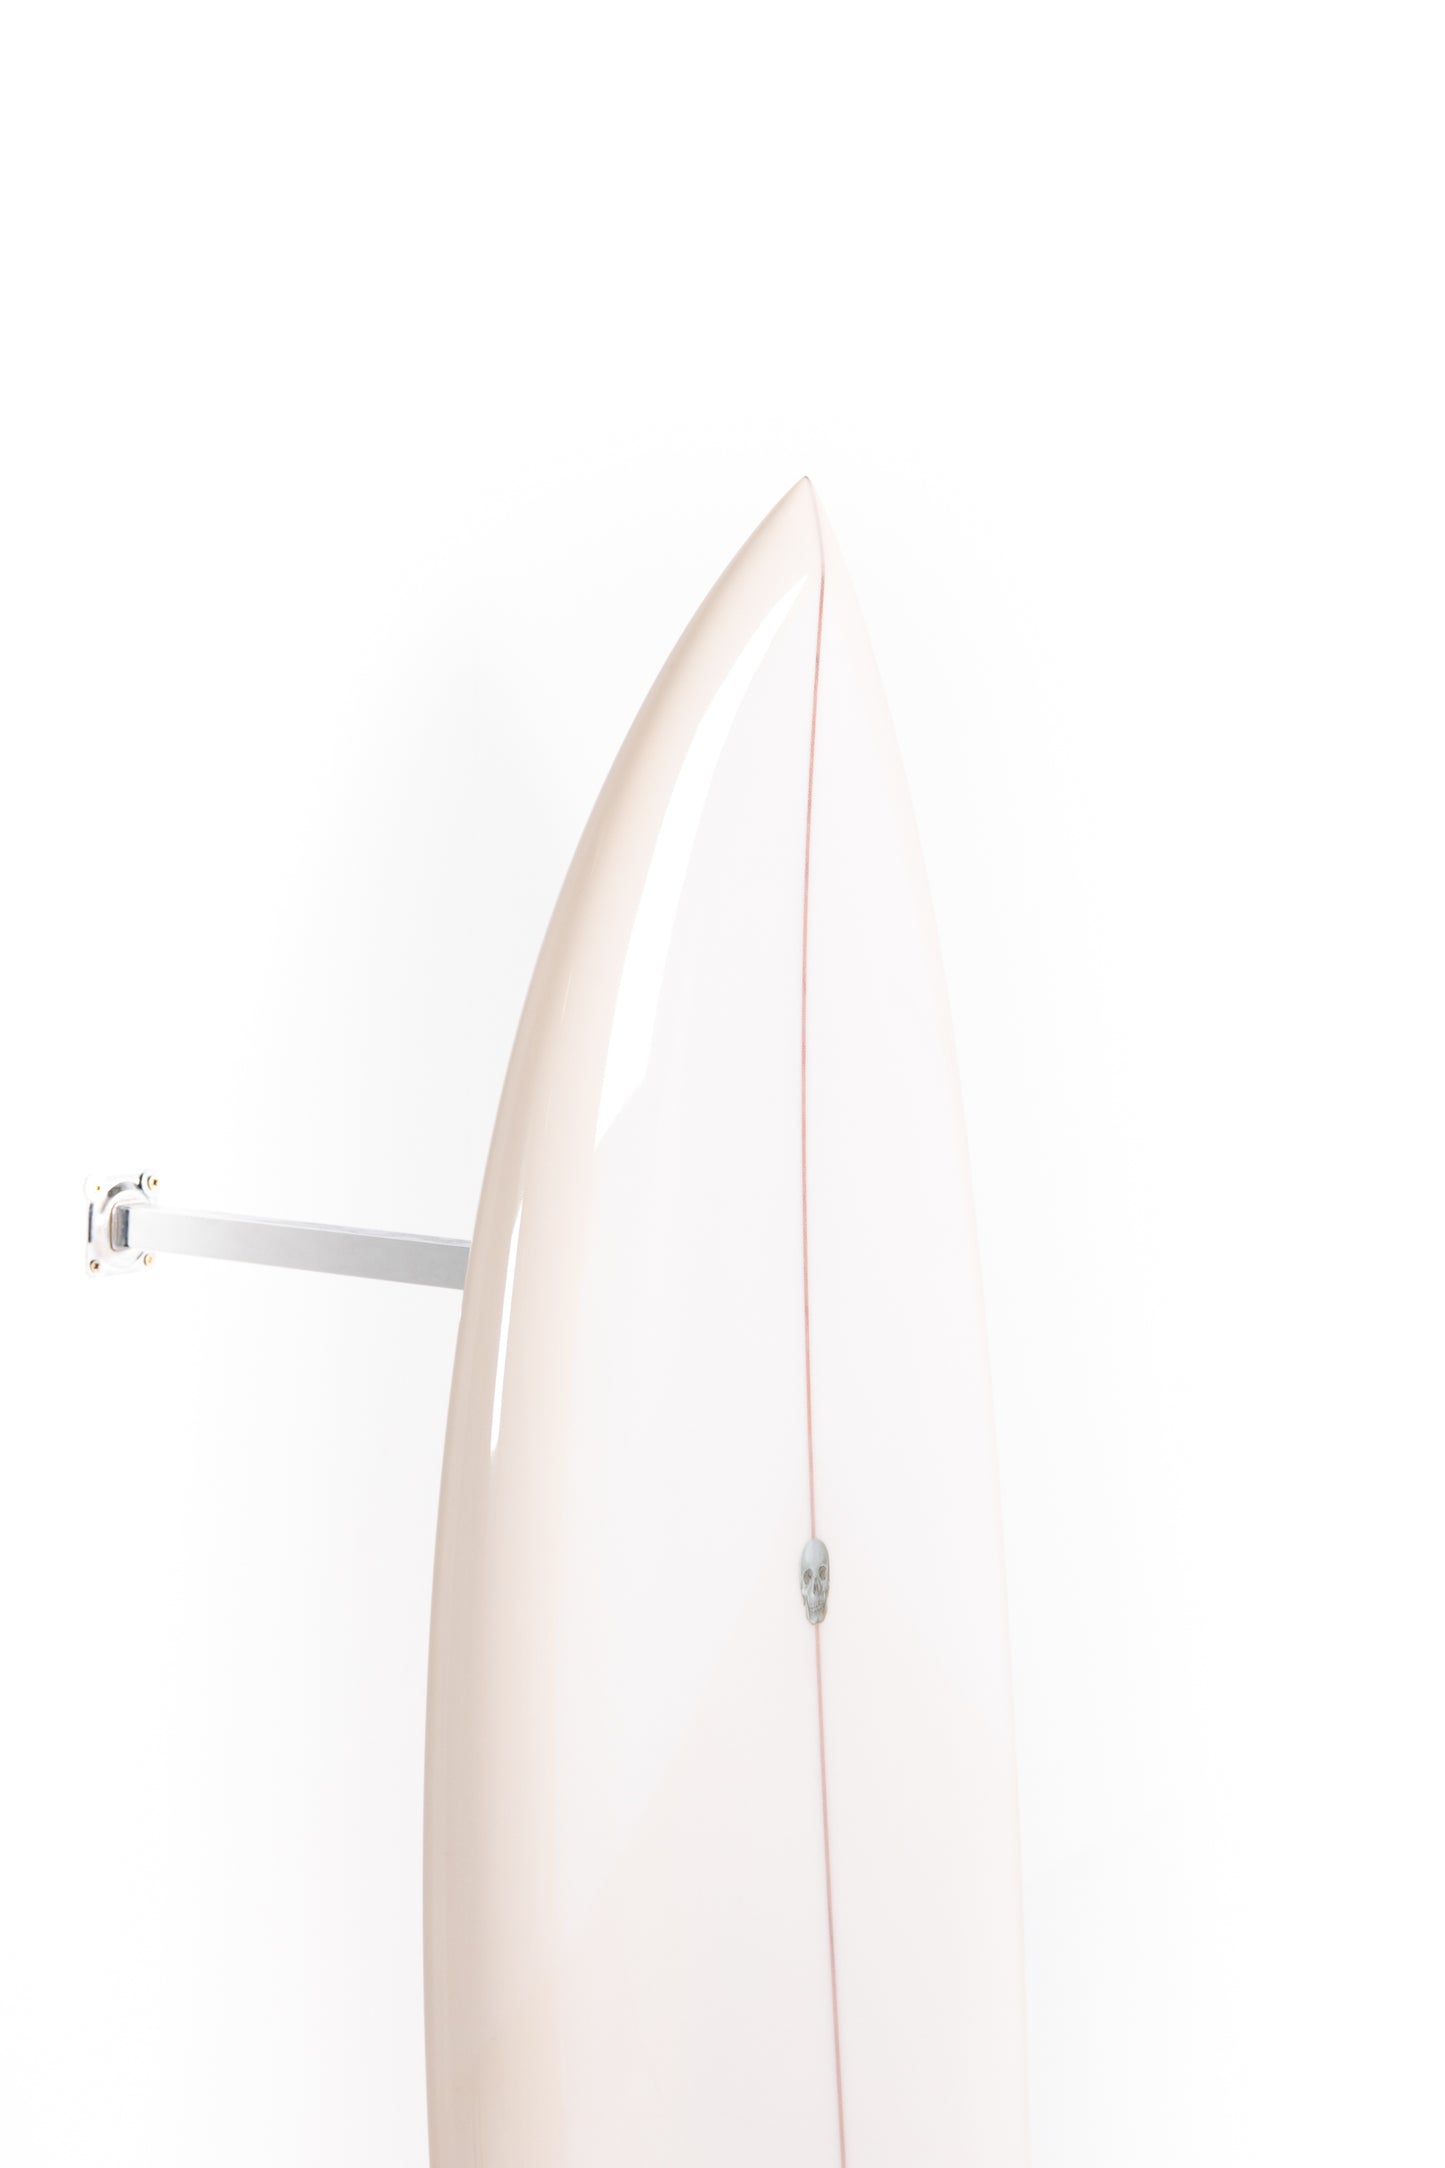 
                  
                    Pukas Surf Shop - Christenson Surfboards - CHRIS FISH - 5'6" x 20 7/8 x 2 7/16 - 33.36L -CX05720
                  
                